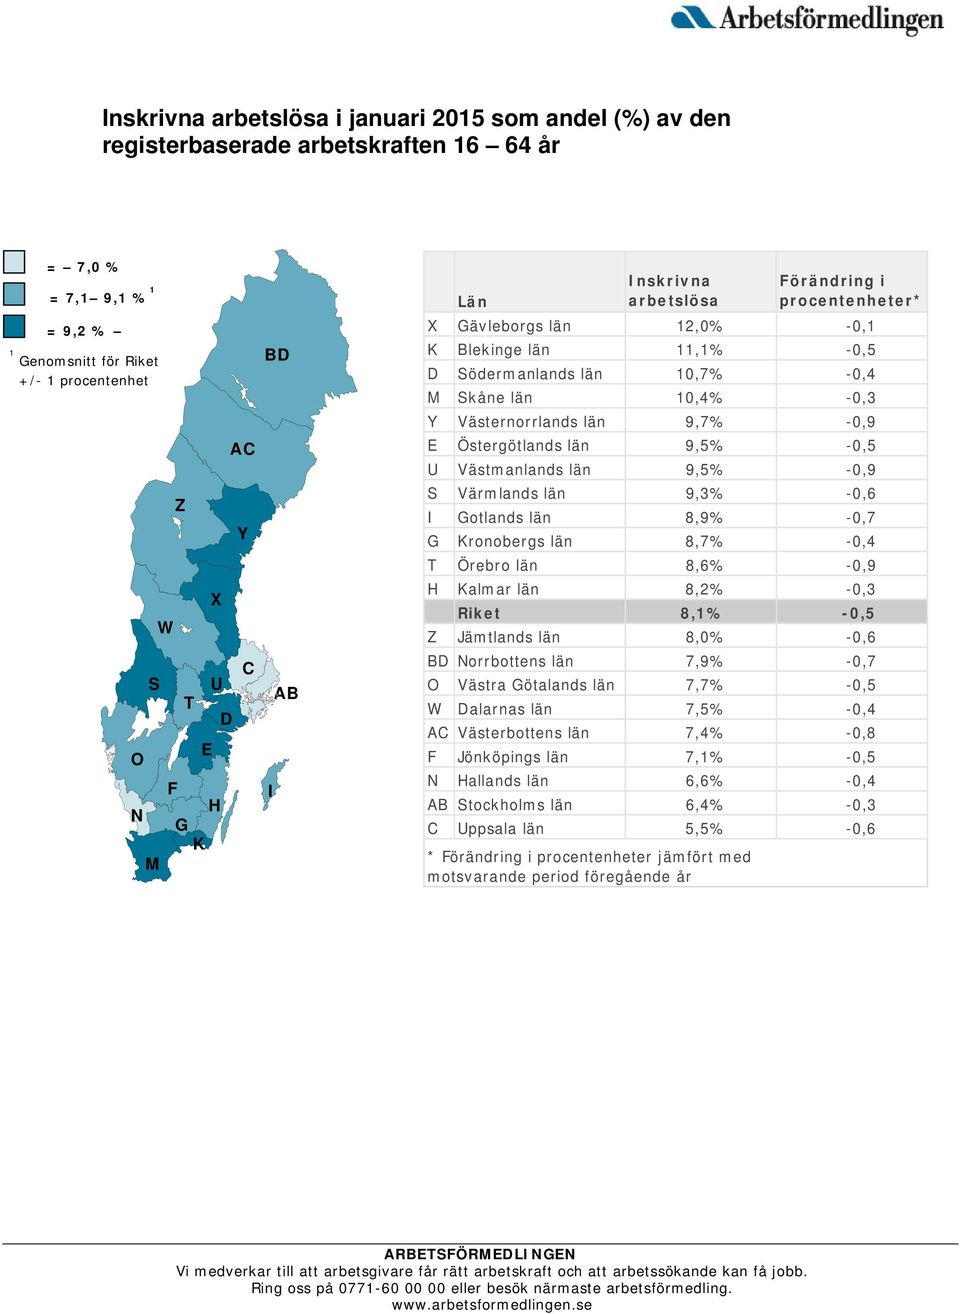 9,7% -0,9 E Östergötlands län 9,5% -0,5 U Västmanlands län 9,5% -0,9 S Värmlands län 9,3% -0,6 I Gotlands län 8,9% -0,7 G Kronobergs län 8,7% -0,4 T Örebro län 8,6% -0,9 H Kalmar län 8,2% -0,3 Riket